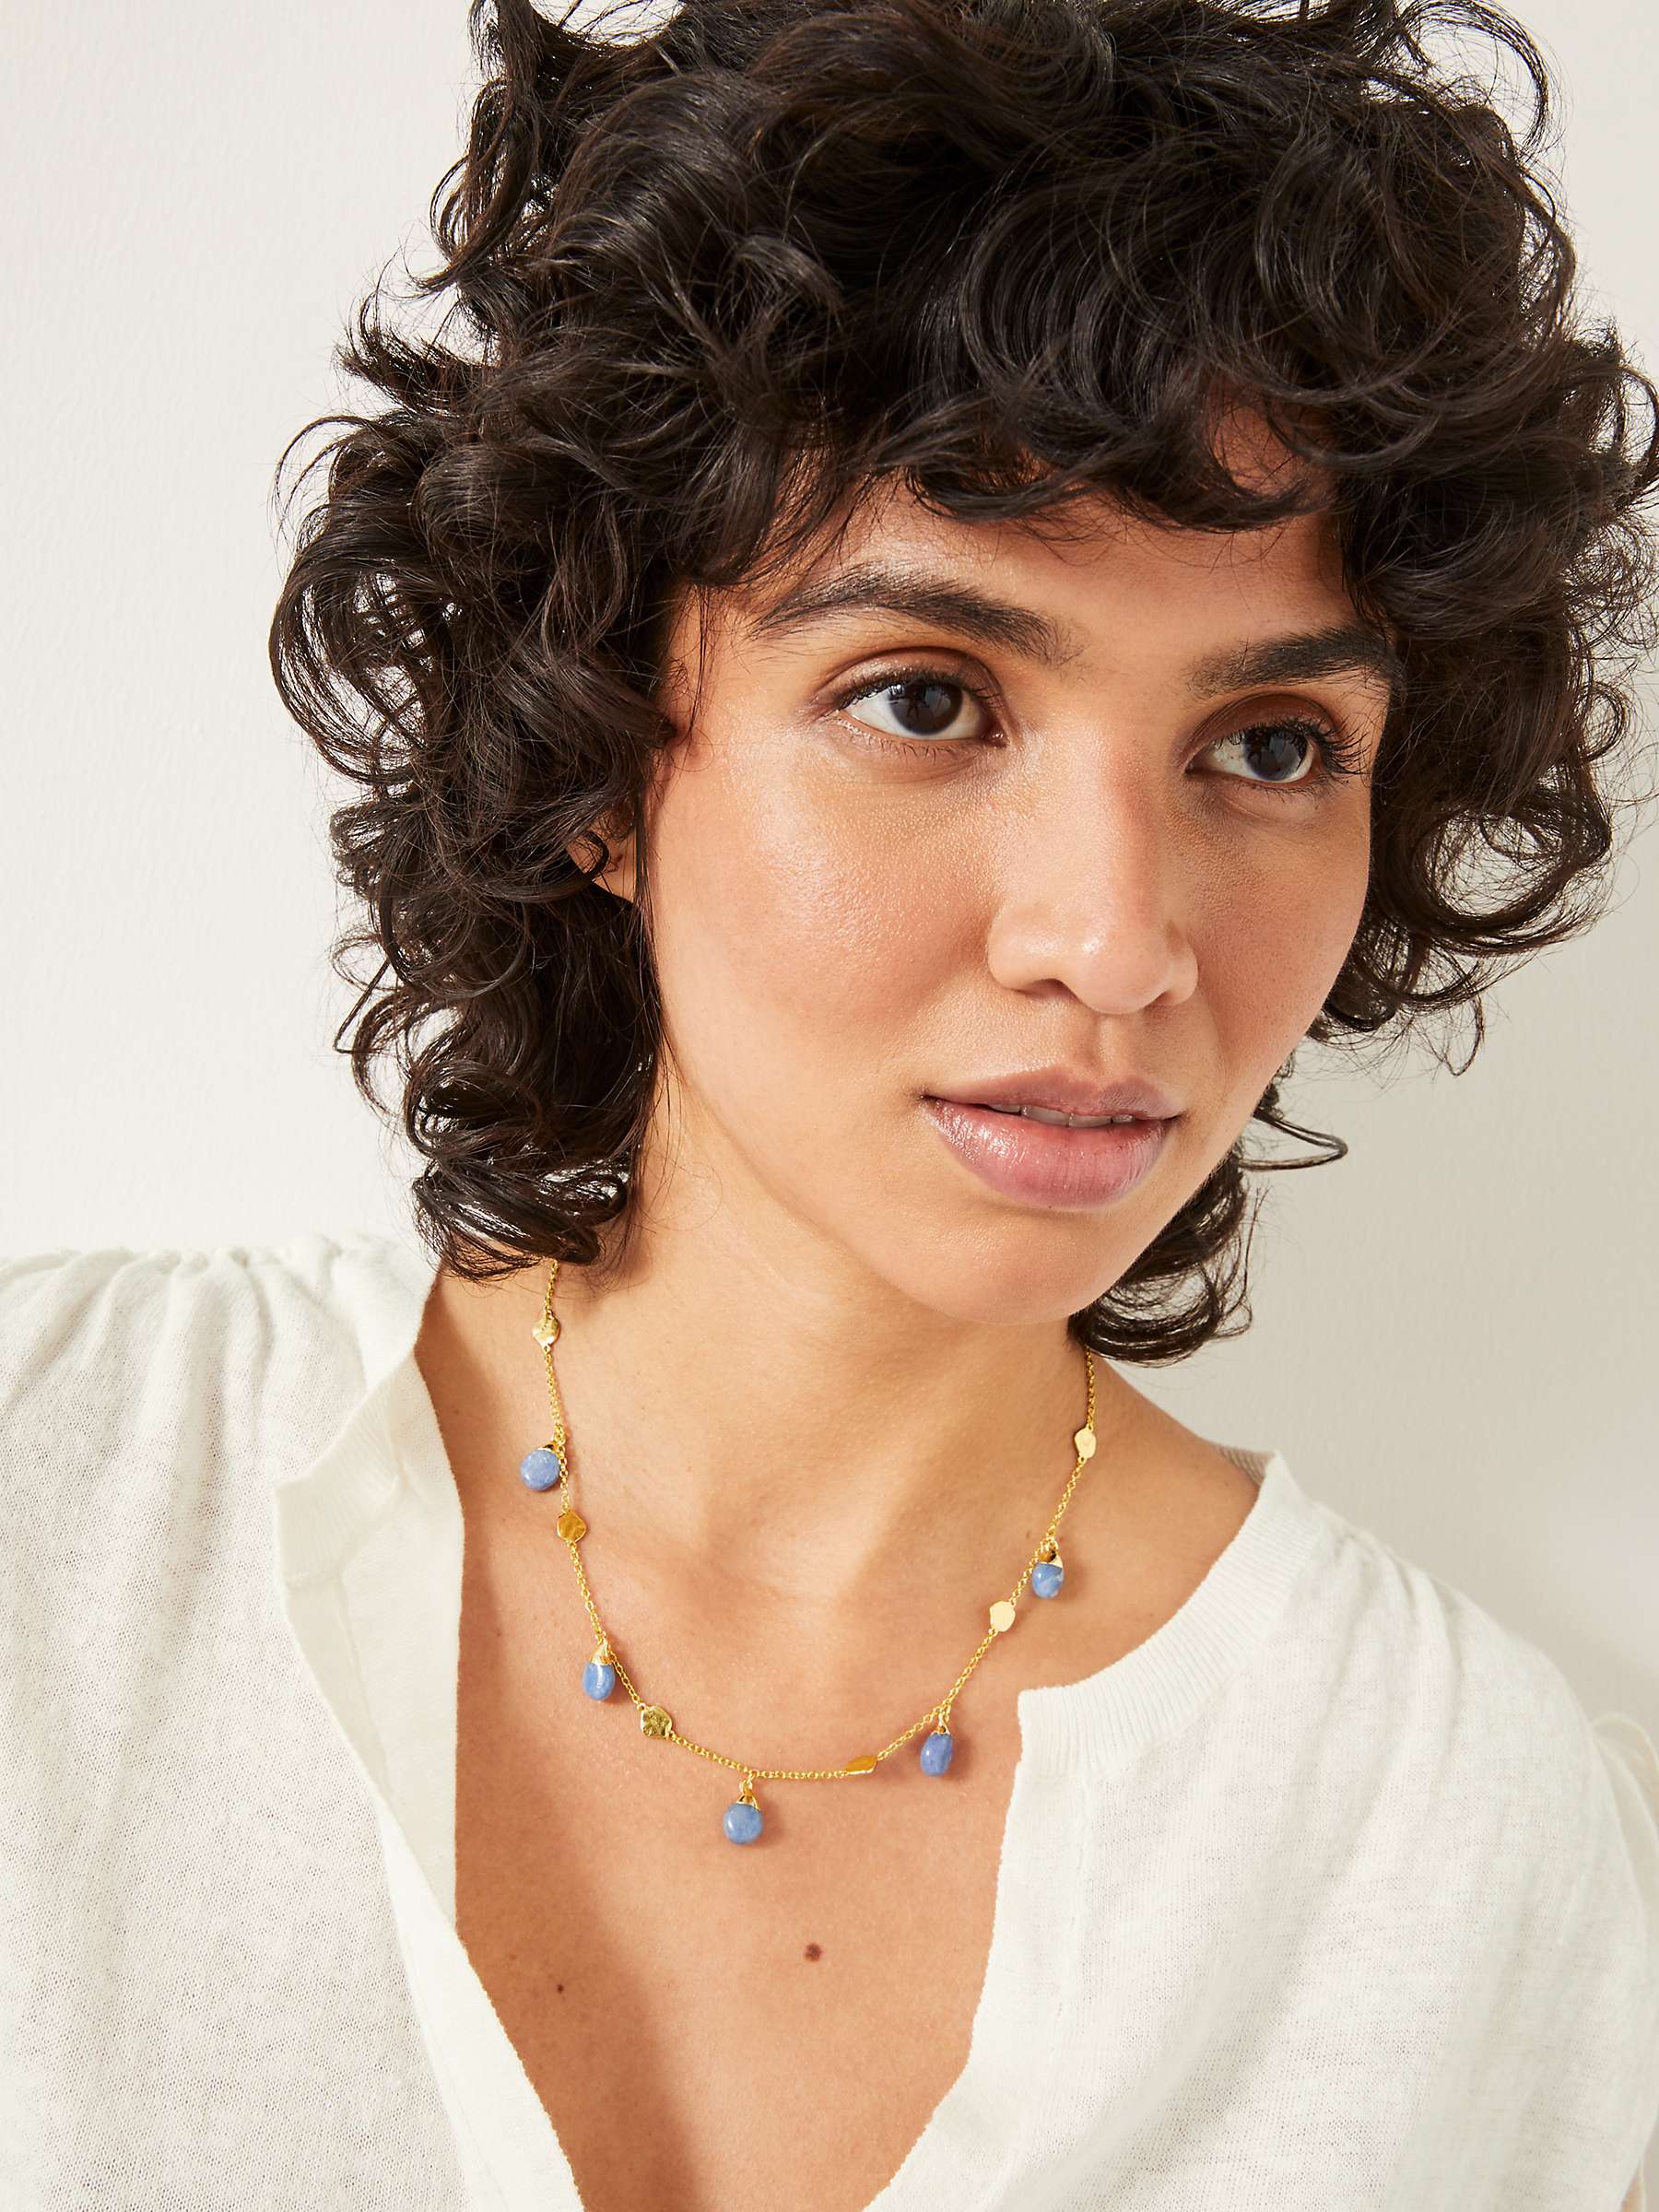 Buy HUSH Adeline Gemstone Choker Necklace, Gold/Blue Online at johnlewis.com